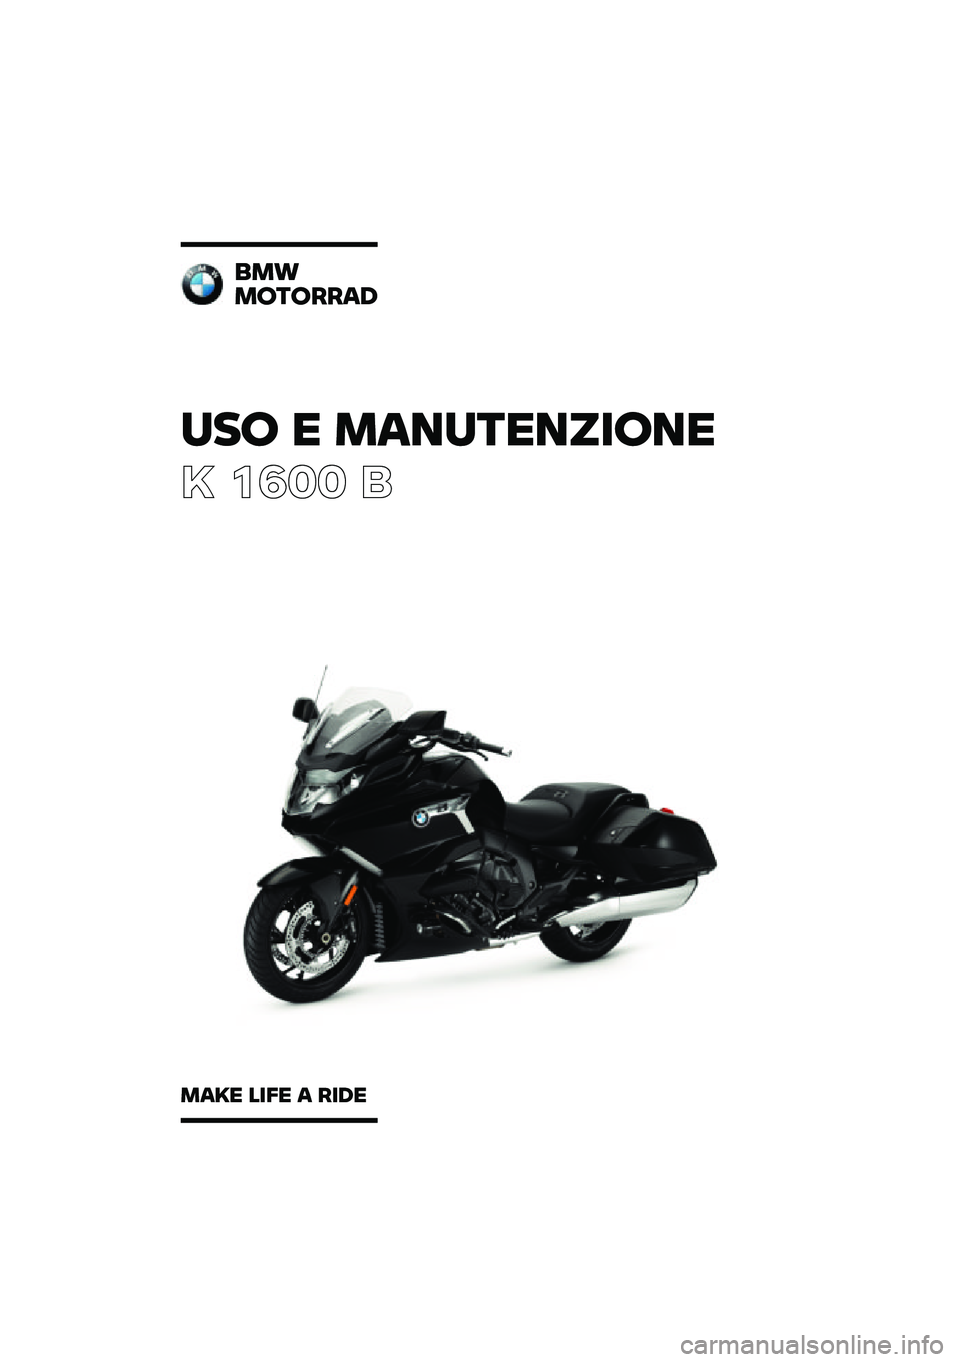 BMW MOTORRAD K 1600 B 2020  Libretto di uso e manutenzione (in Italian) ��� � ���\b��	��\b�
���\b�
� ���� �	
�\f��
���	�����
���� ���� � ���� 